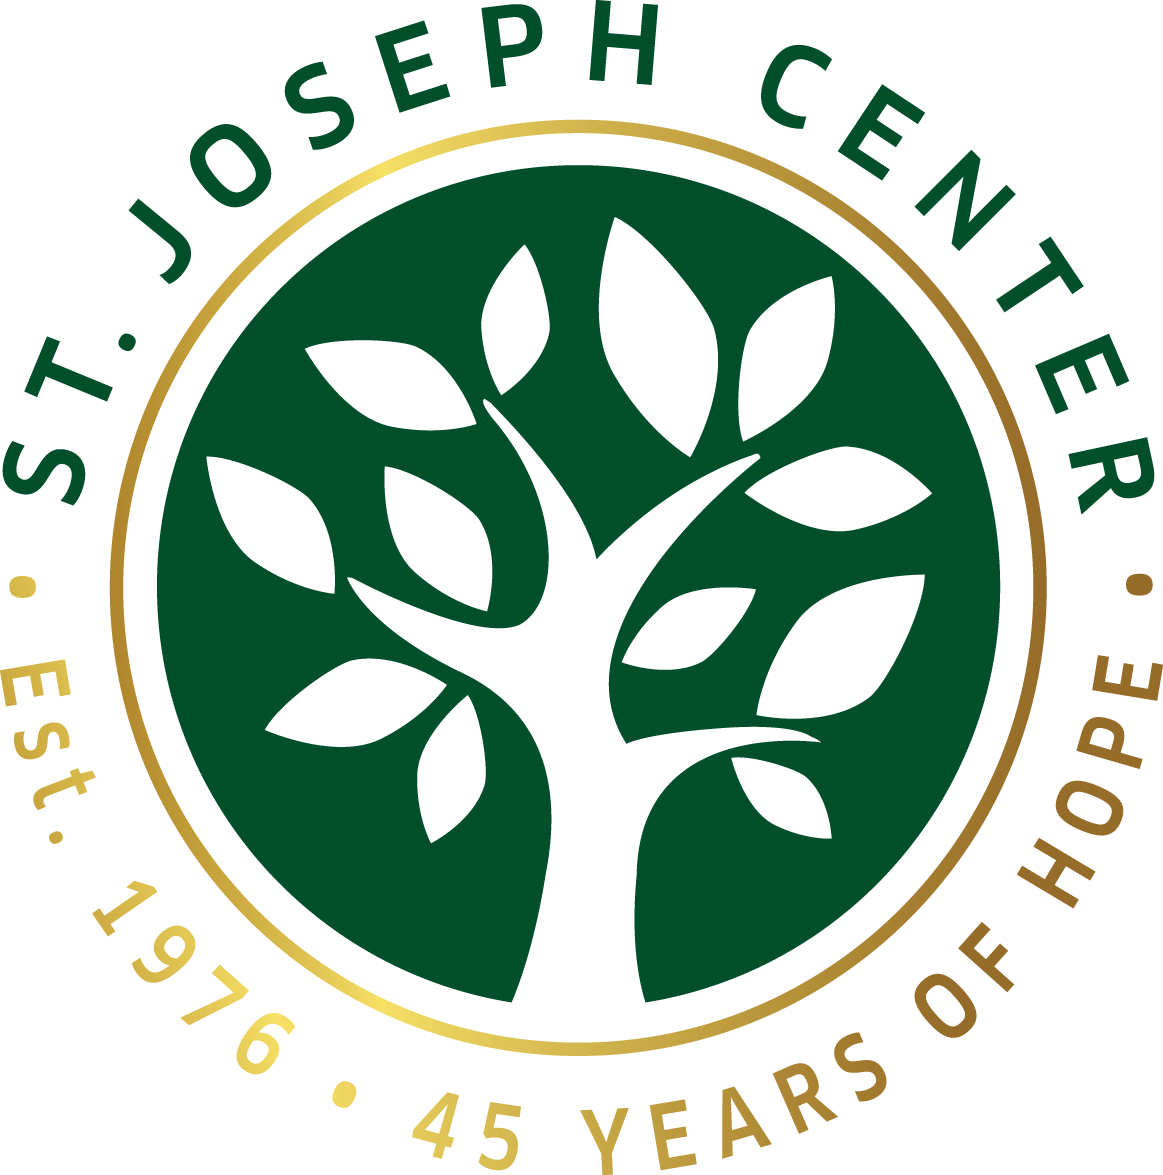 St. Joseph Center